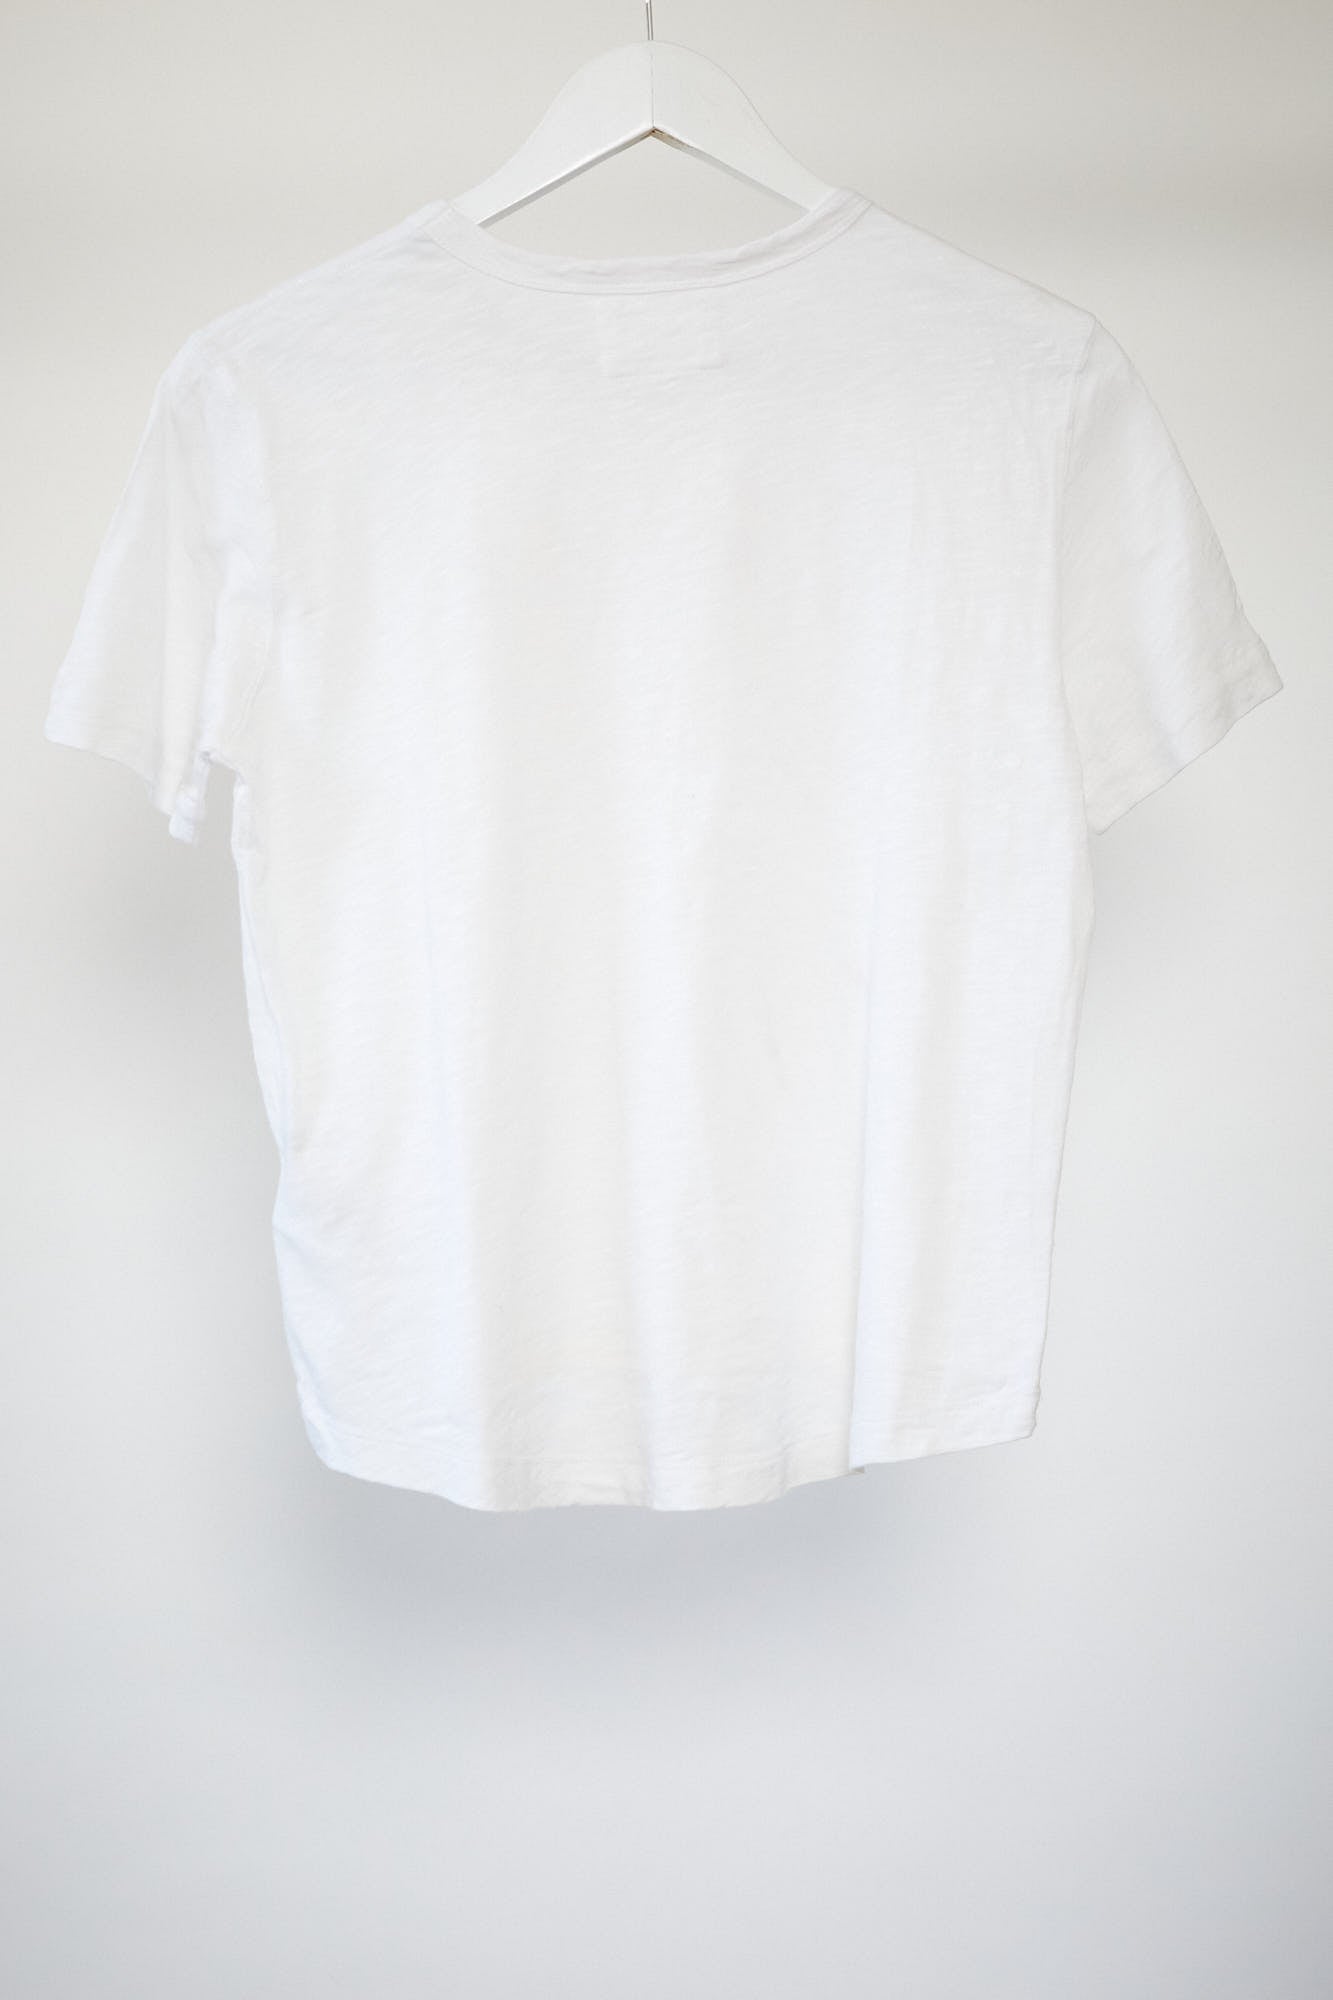 Womens White Boxy fit T-shirt size small